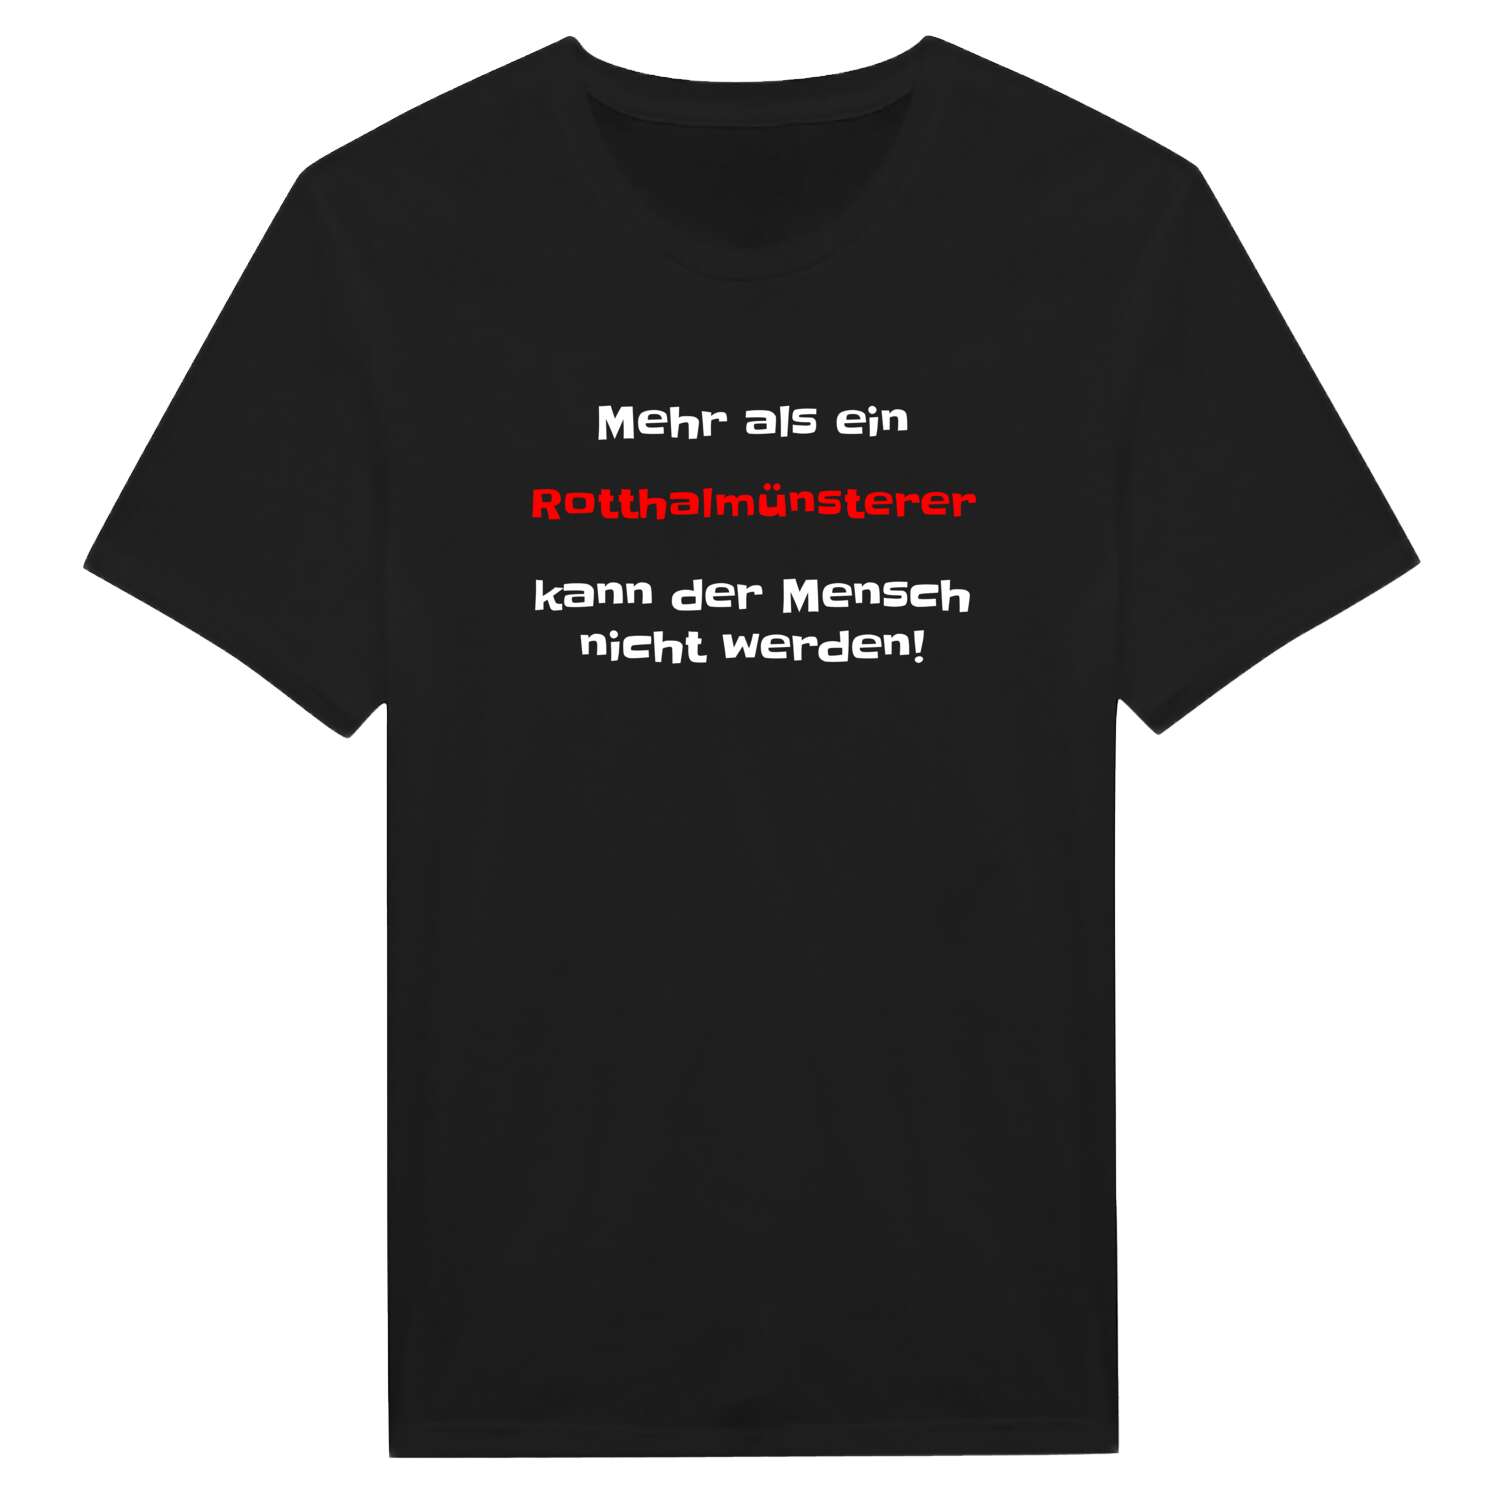 Rotthalmünster T-Shirt »Mehr als ein«